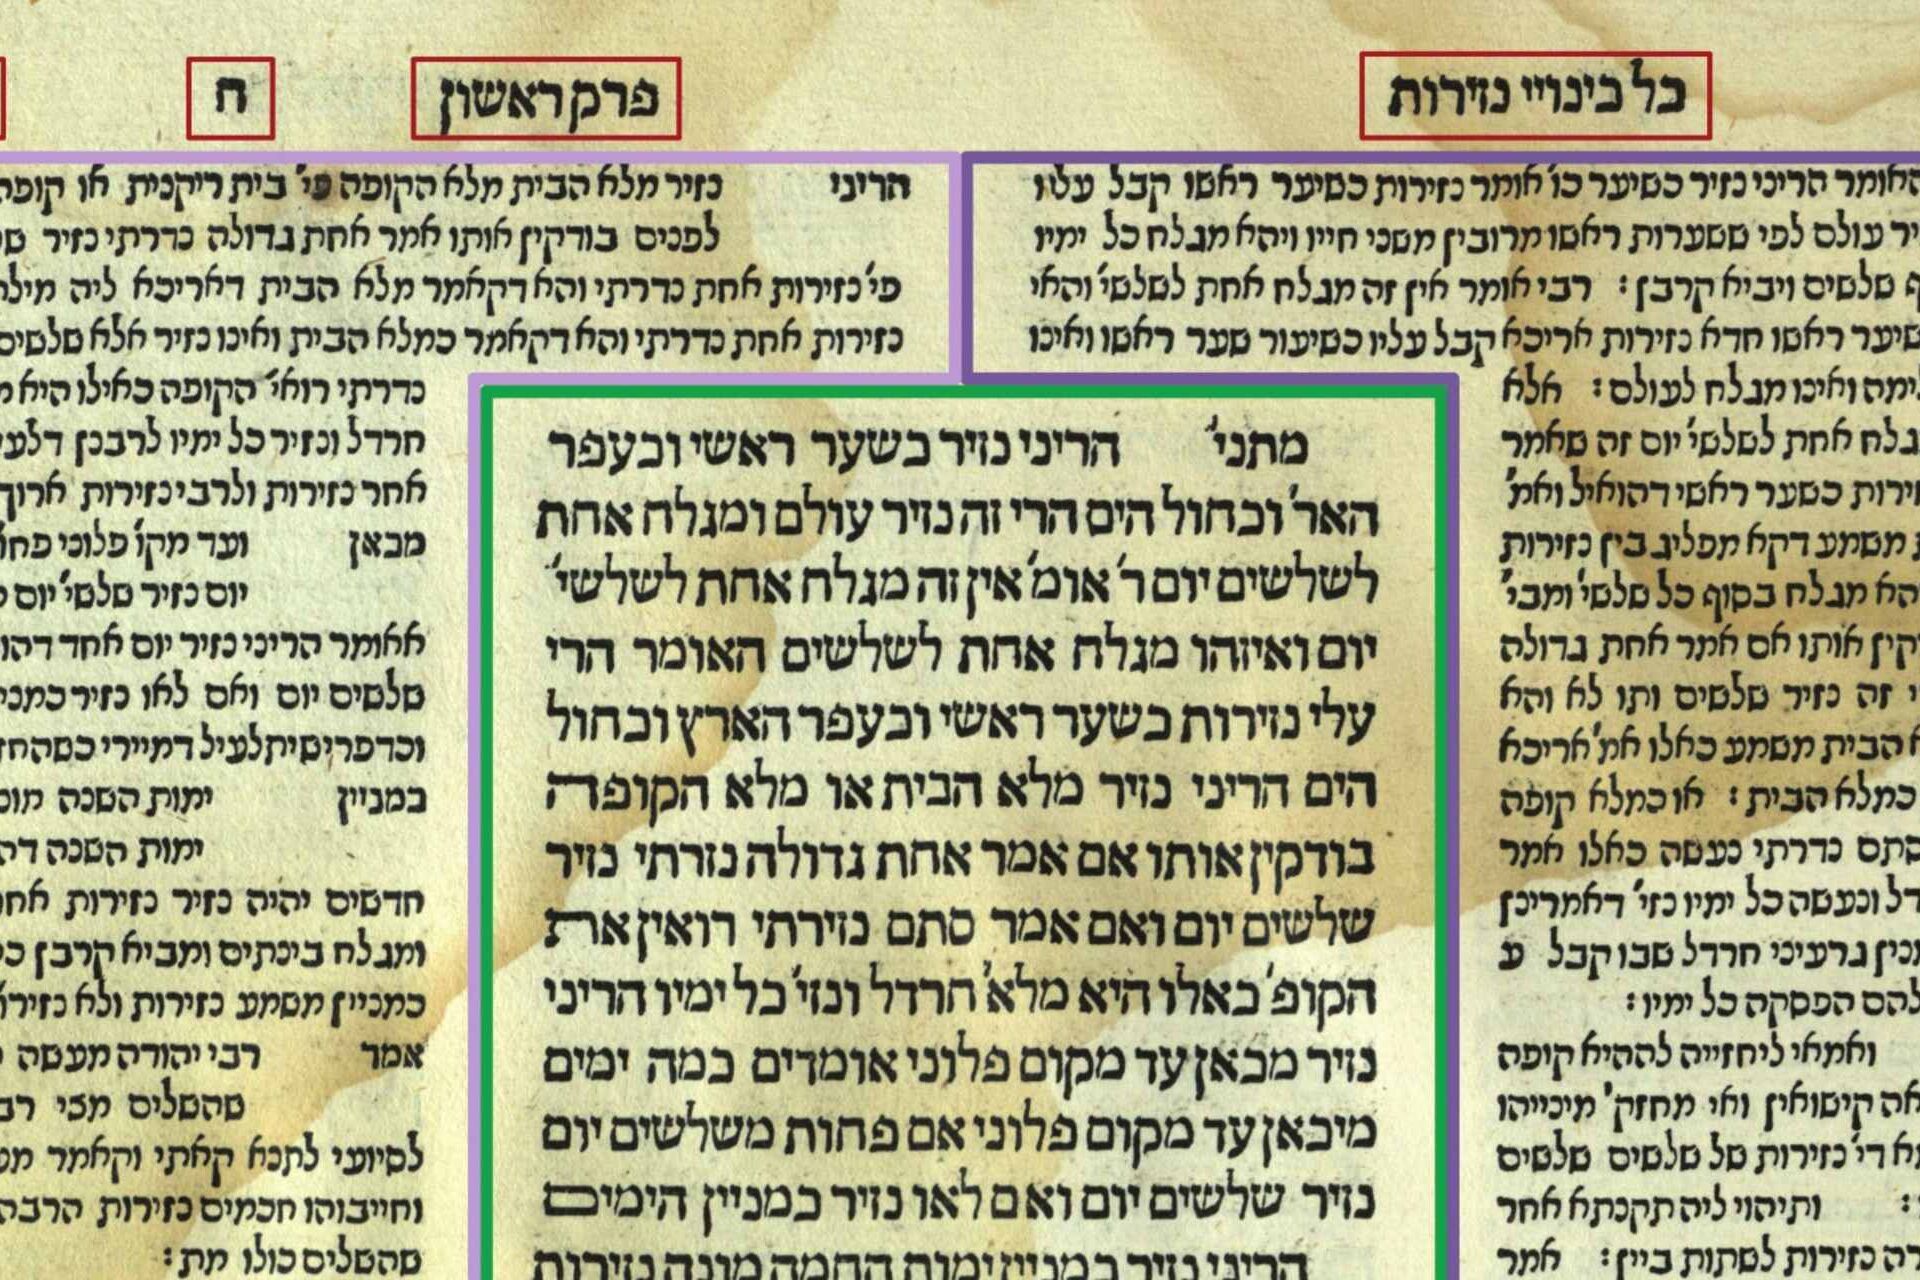 Kuva juutalaisten Talmudista, jossa on kommentit marginaaleissa